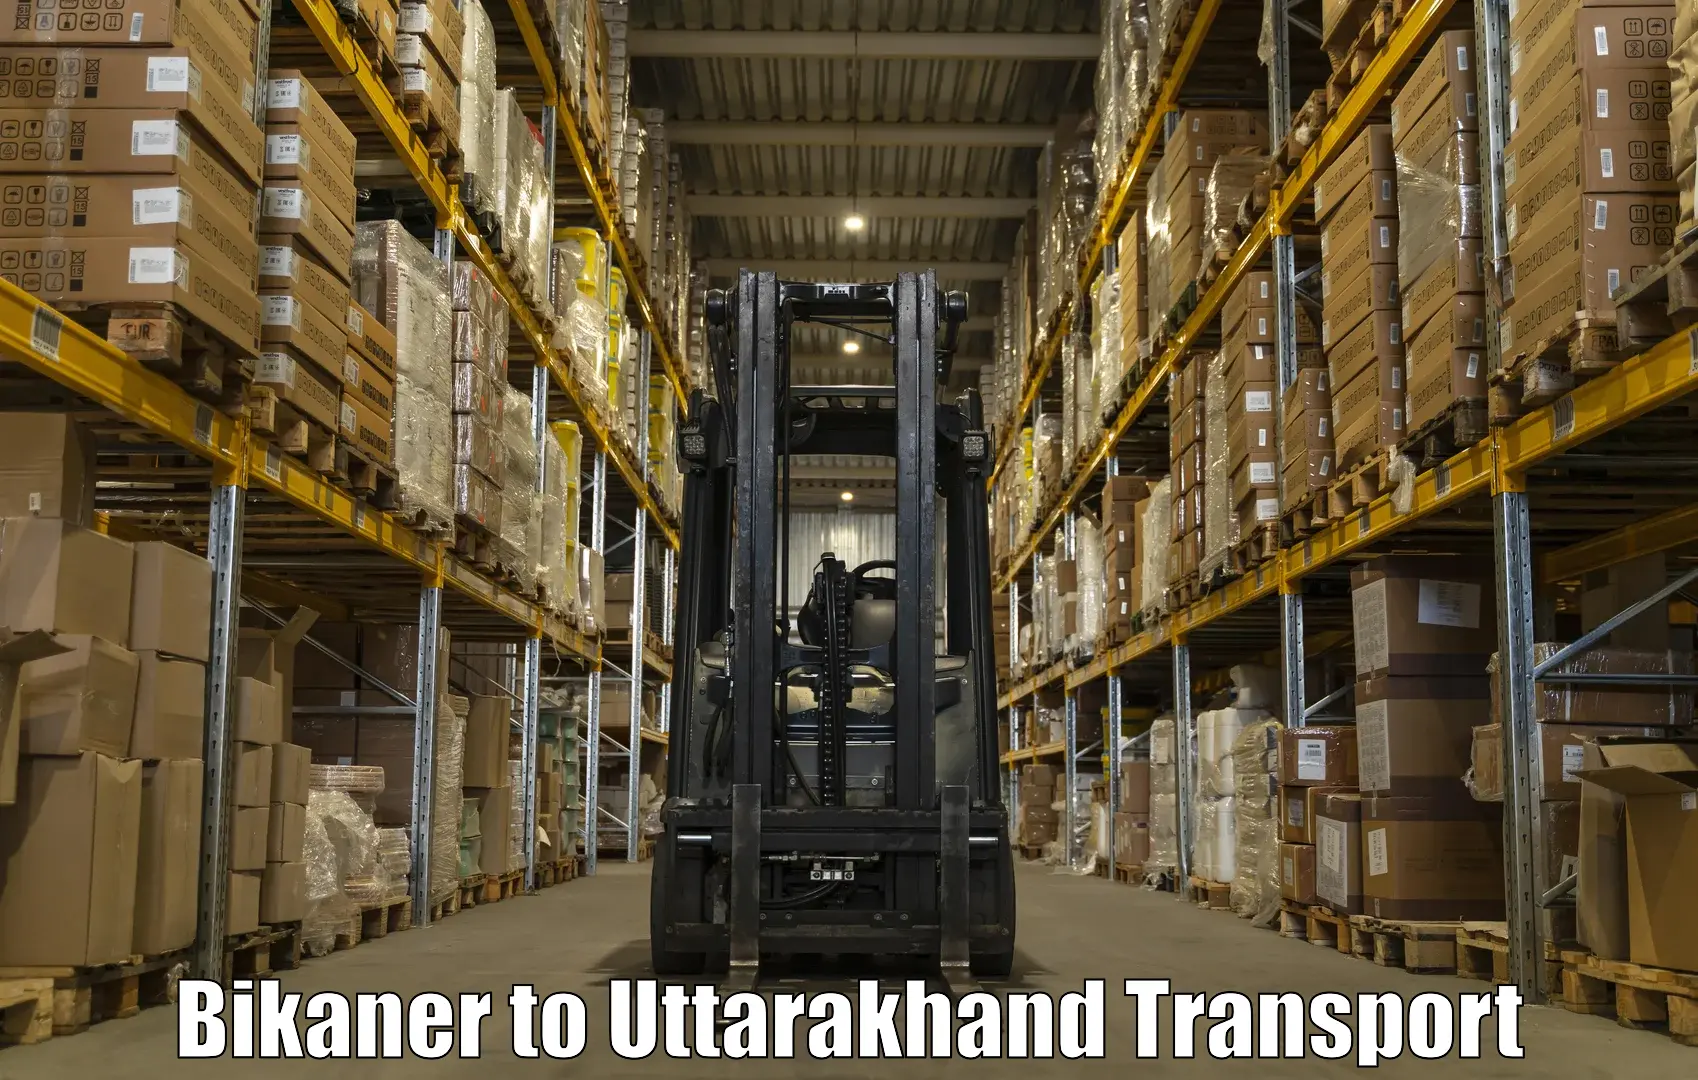 Luggage transport services Bikaner to Kotdwara